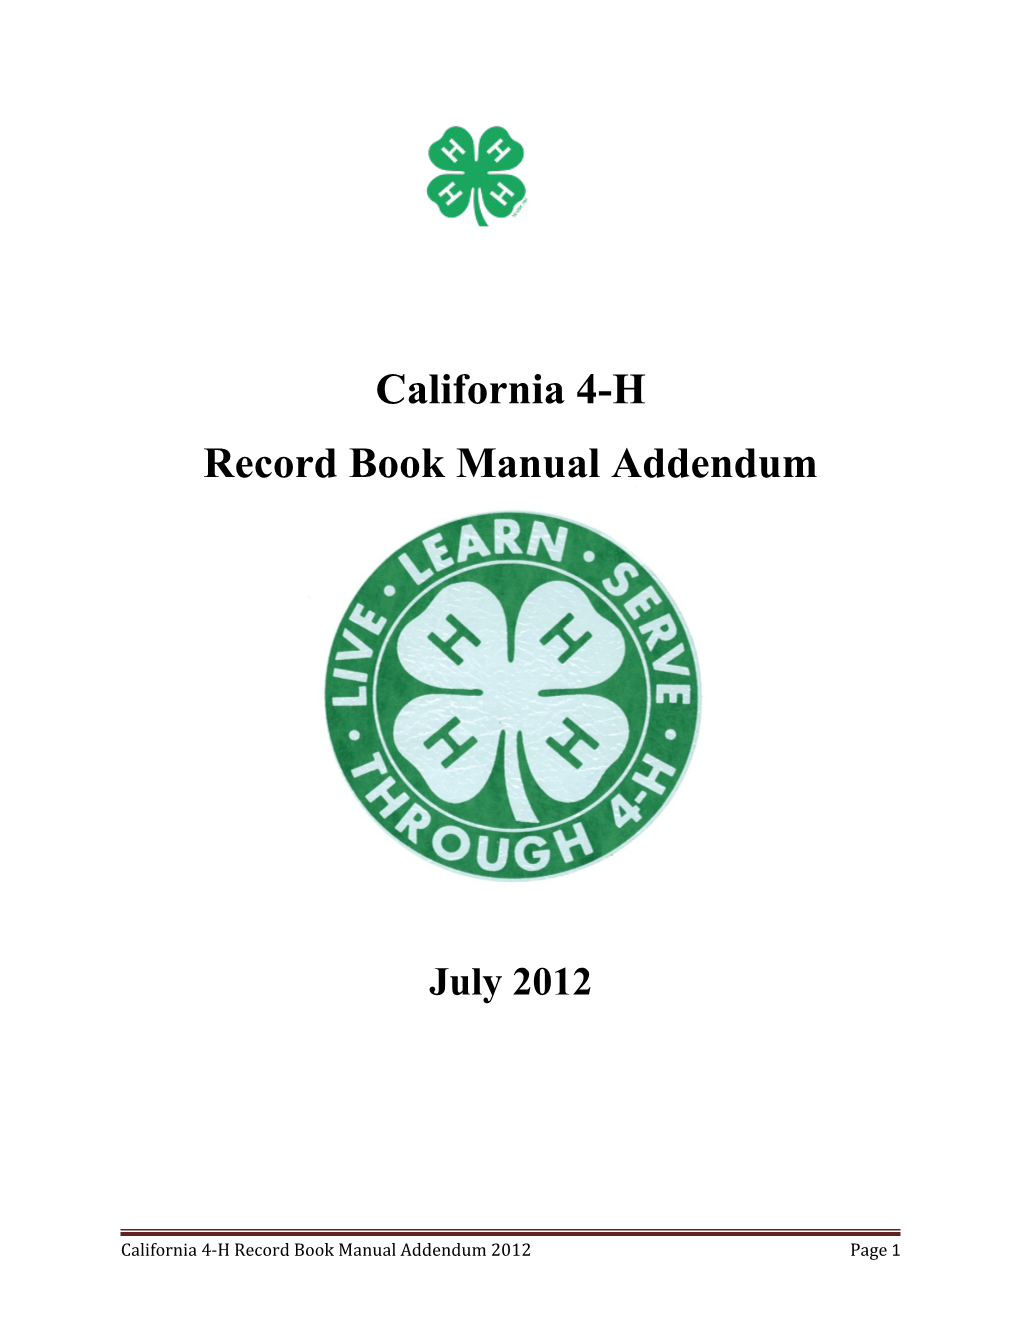 Record Book Manual Addendum